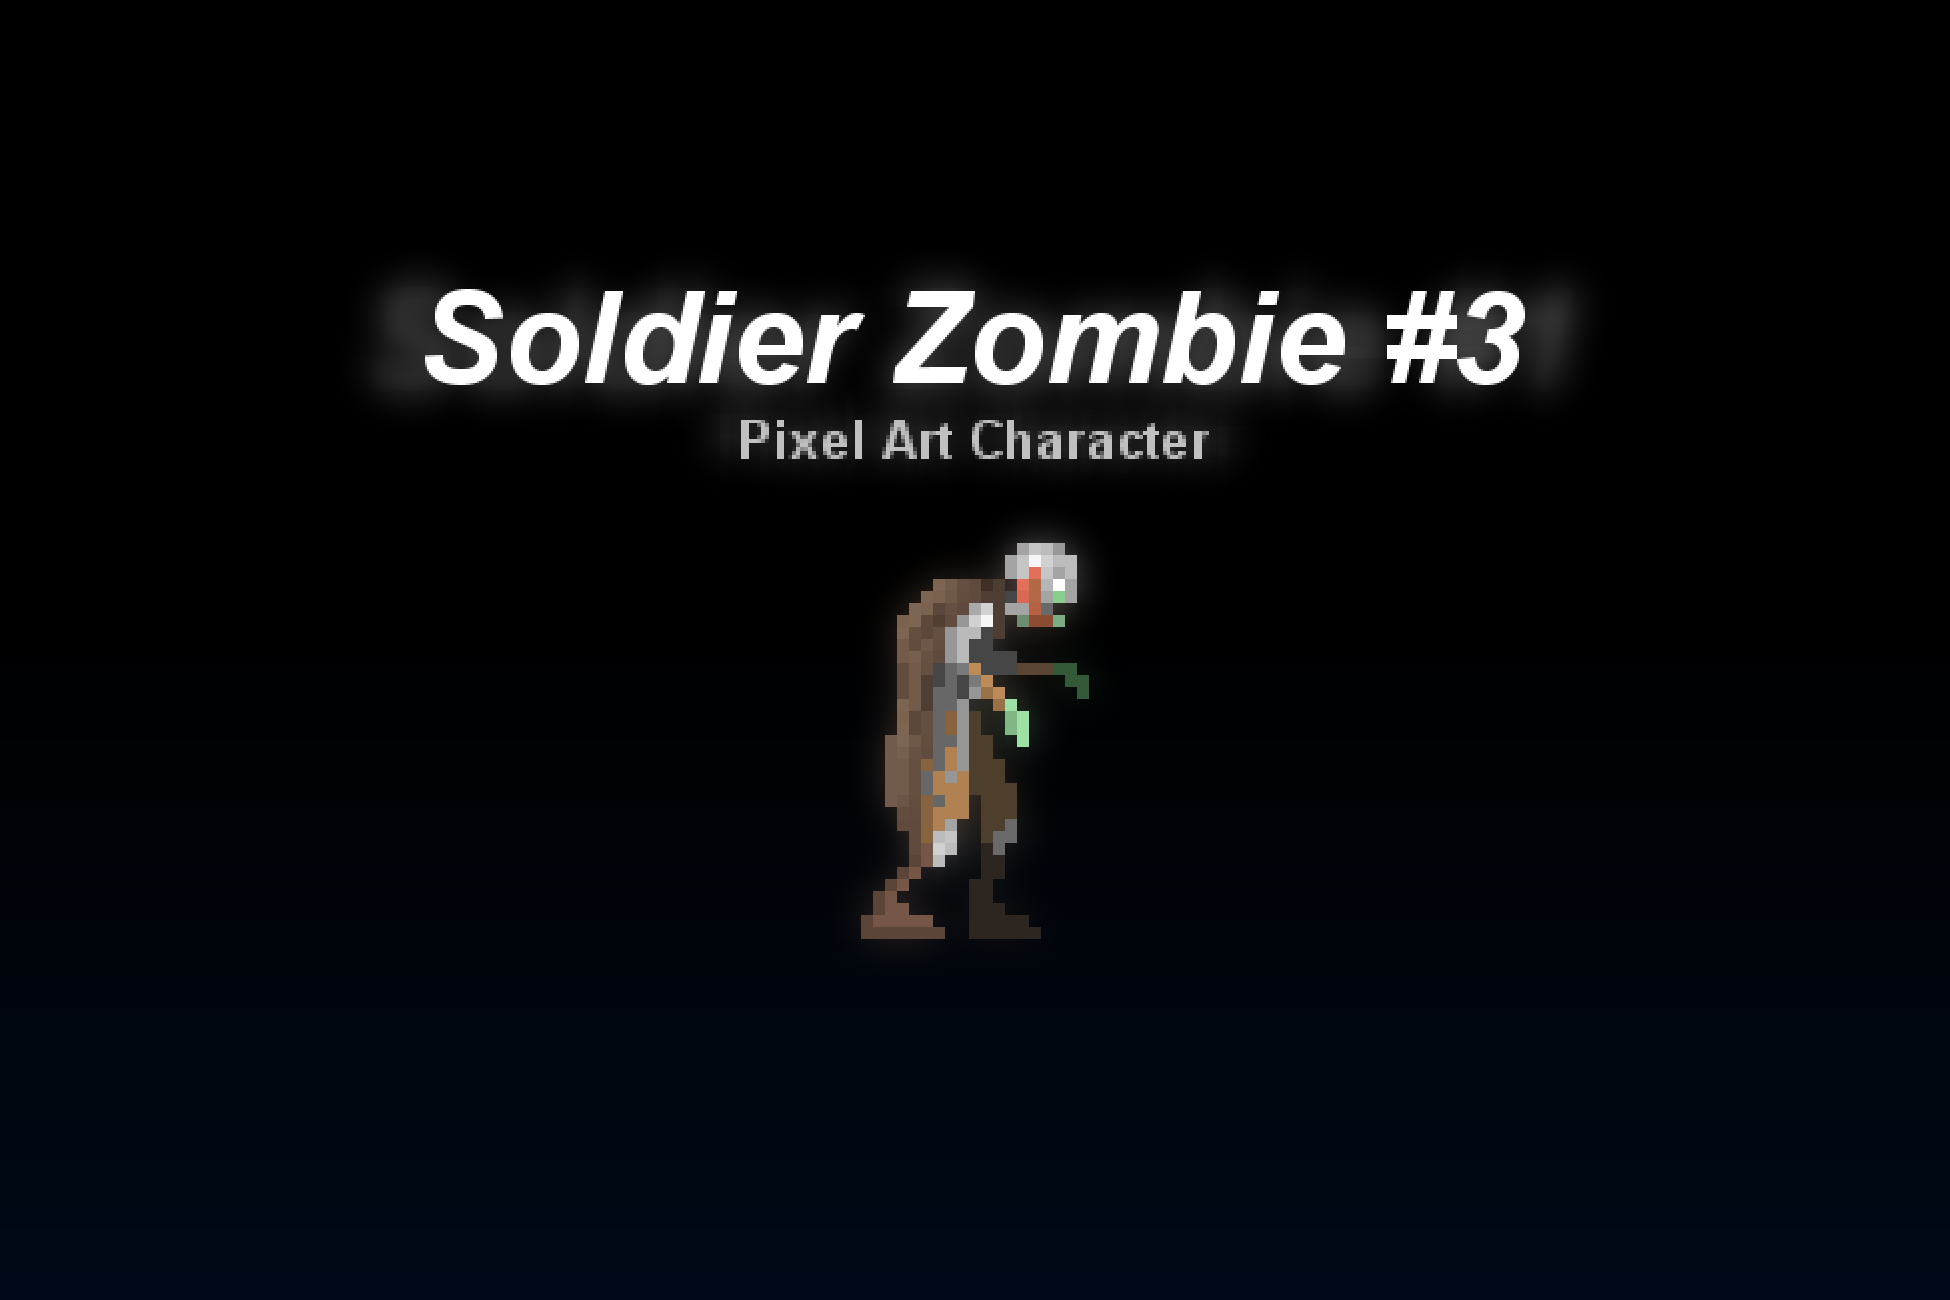 Soldier Zombie #3 - Pixel Art Character